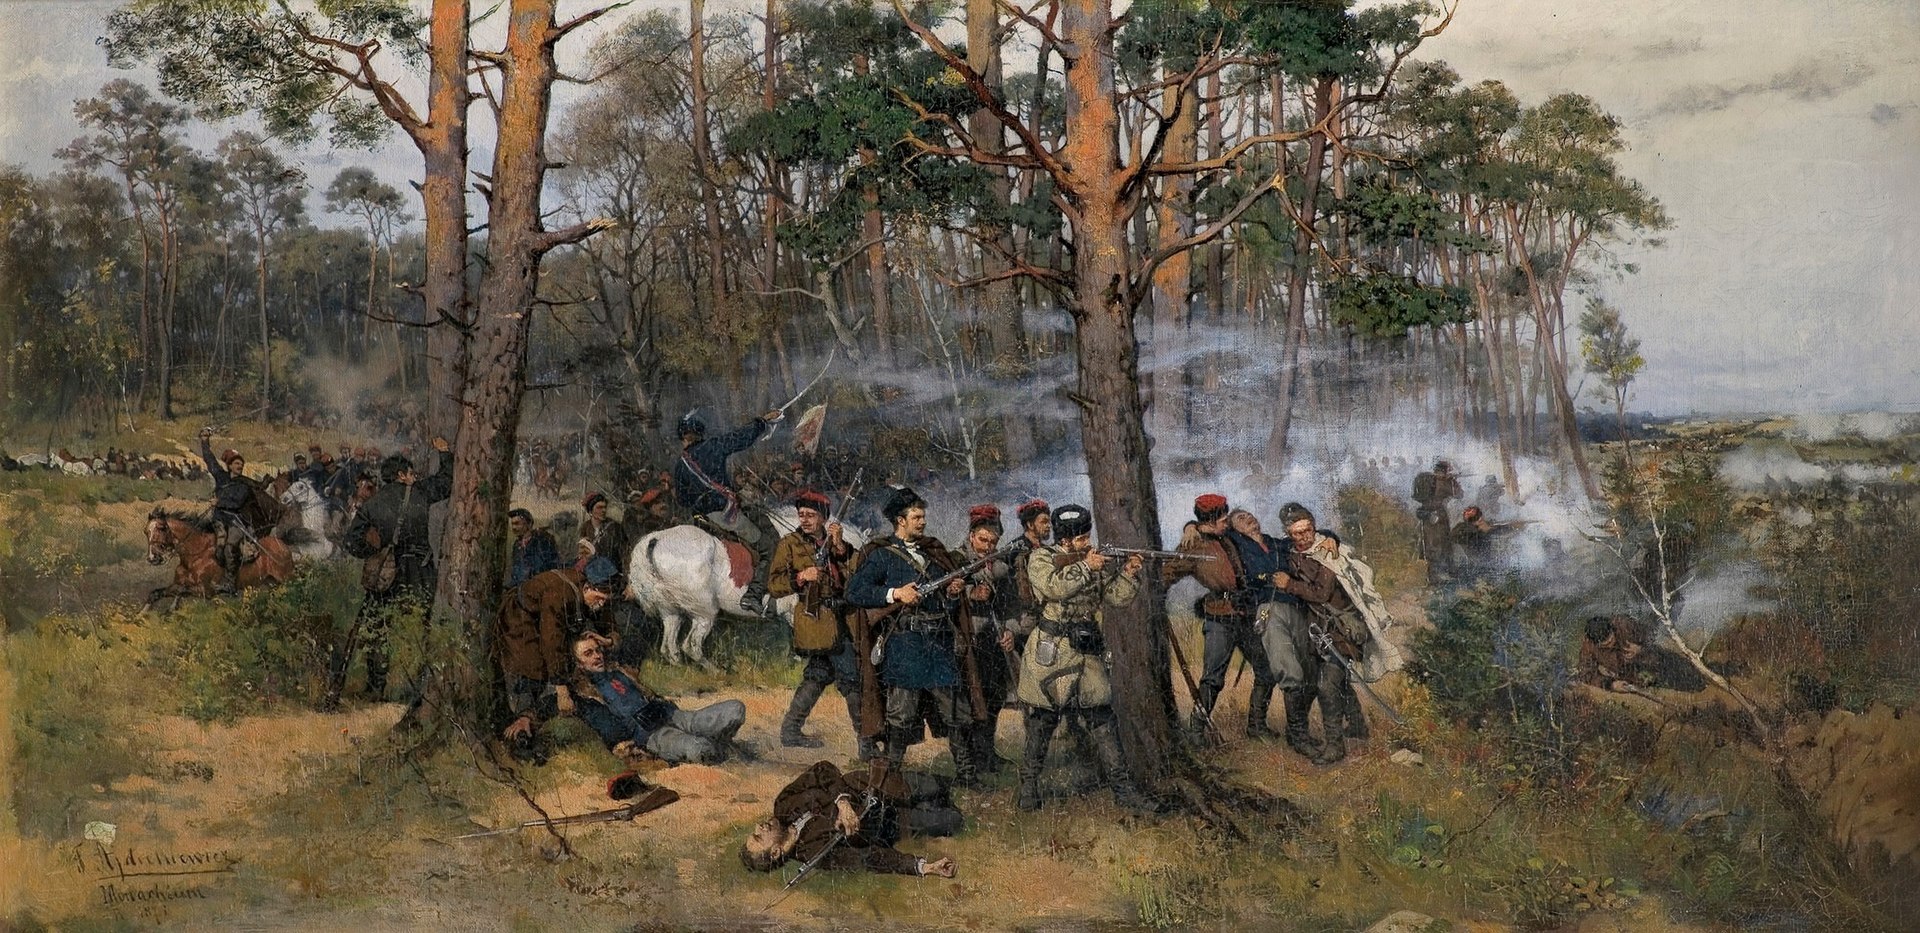 Obraz Tadeusza Ajdukiewicza "Scena z powstania styczniowego 1863", źr. Wikipedia/domena publiczna